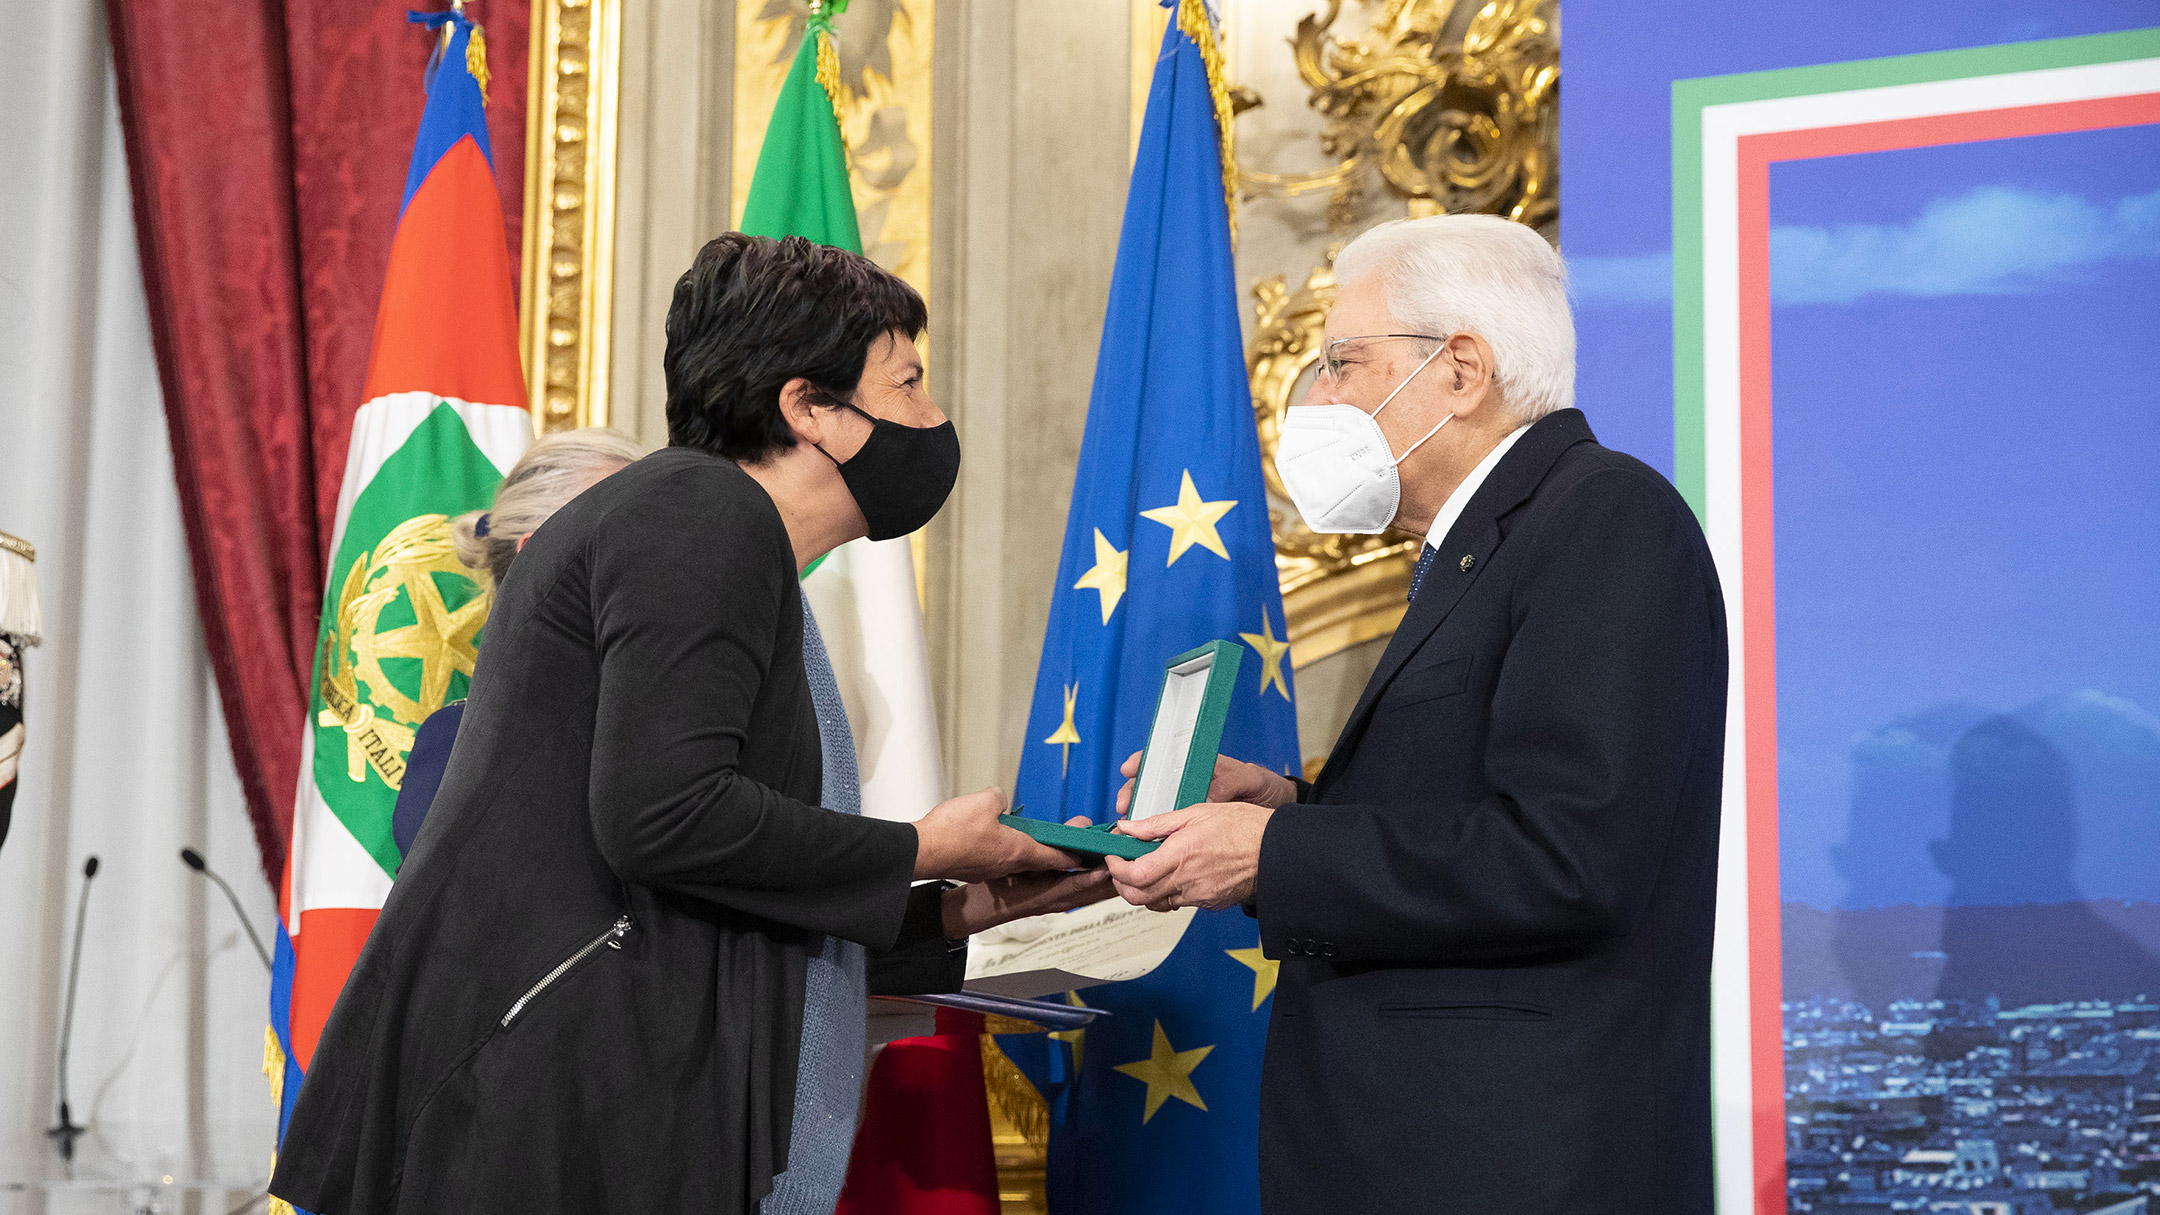 Chiara e il presidente Mattarella - Nuovi Orizzonti